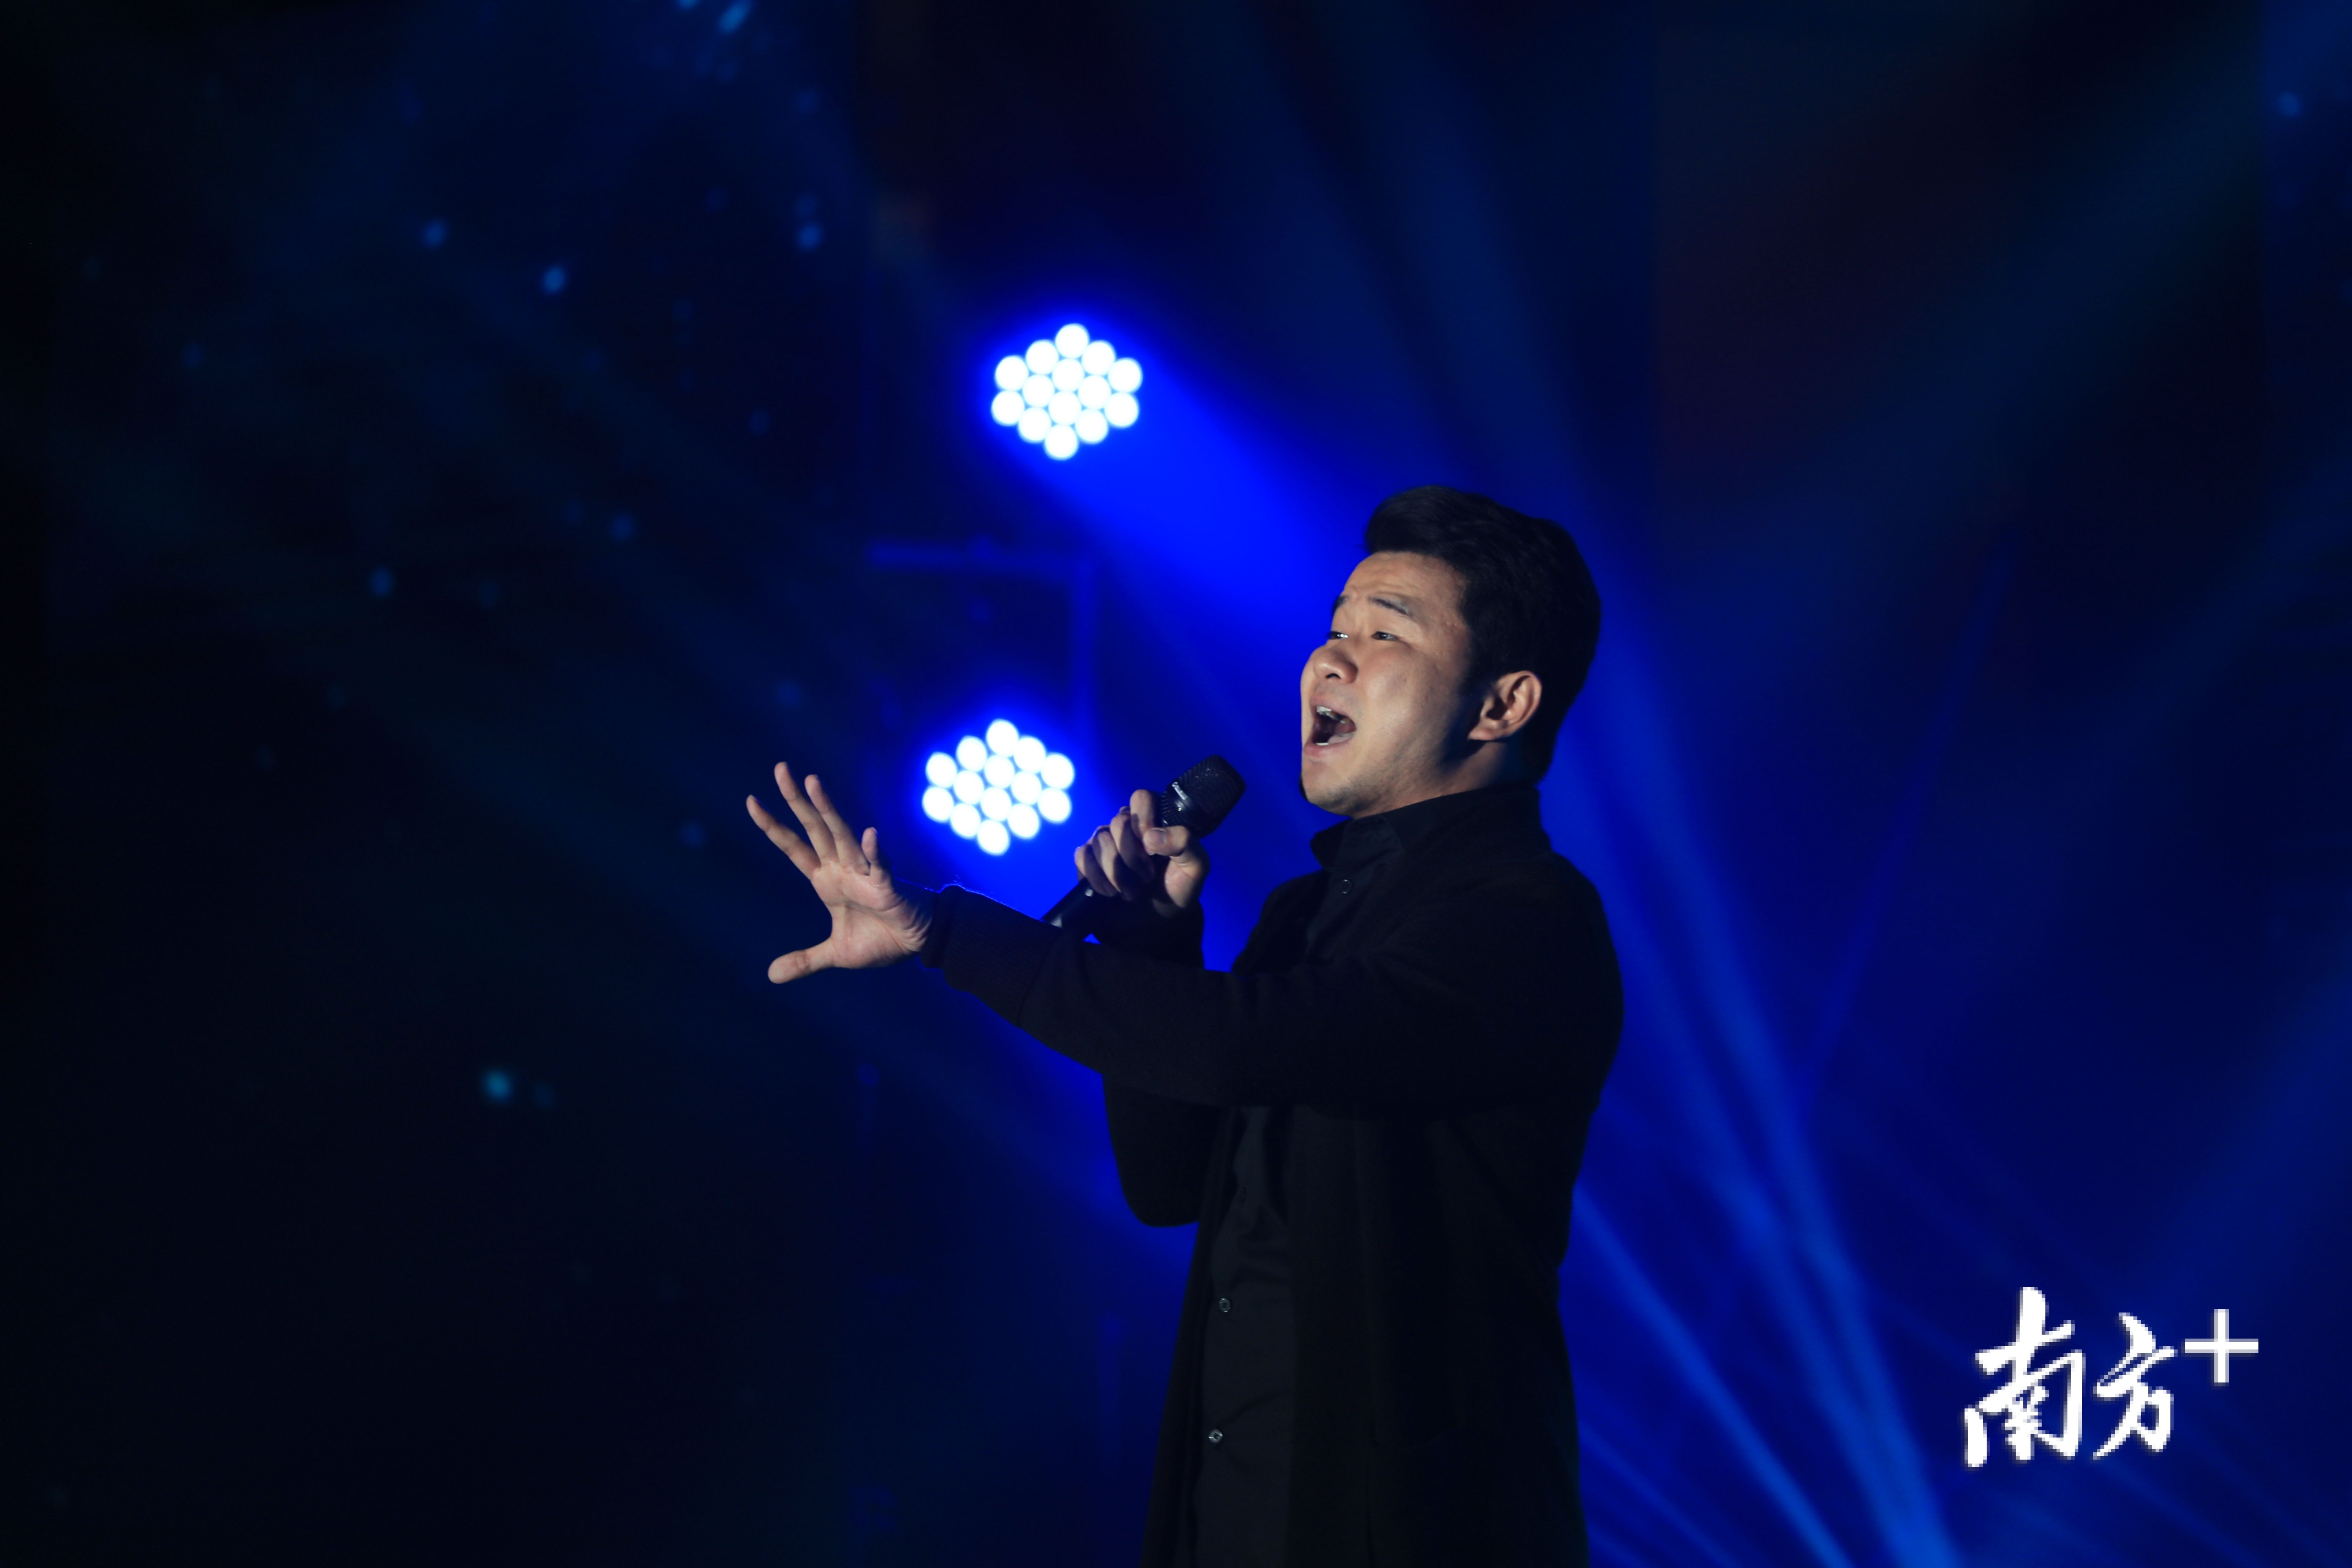 个人参赛选手冯南峥男声独唱《生命》。